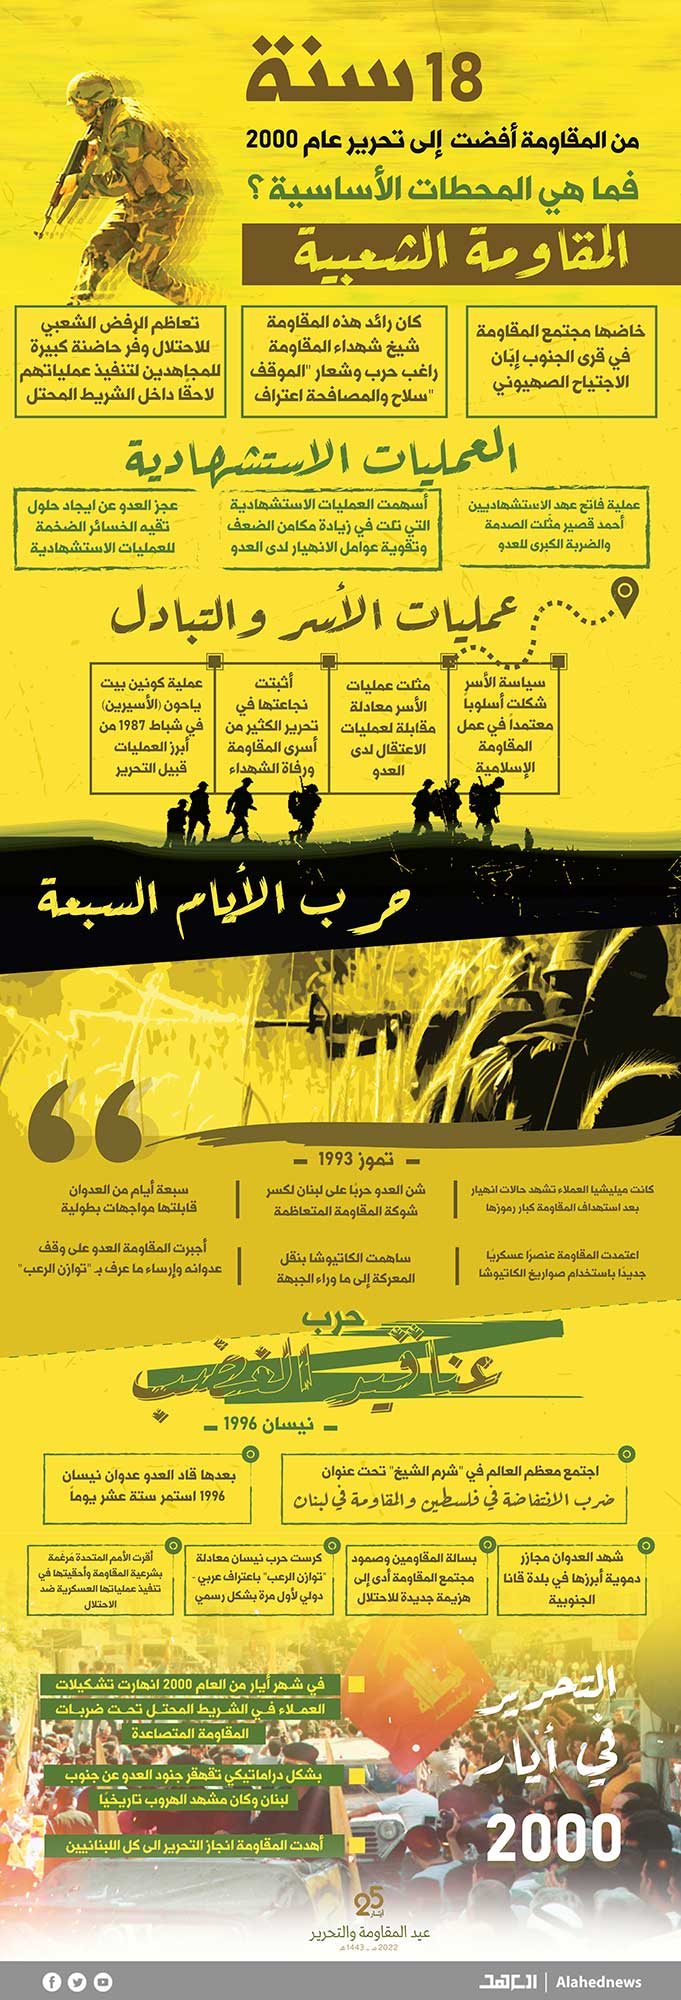 محطات أساسية في تاريخ المقاومة.. من 1982 حتى التحرير